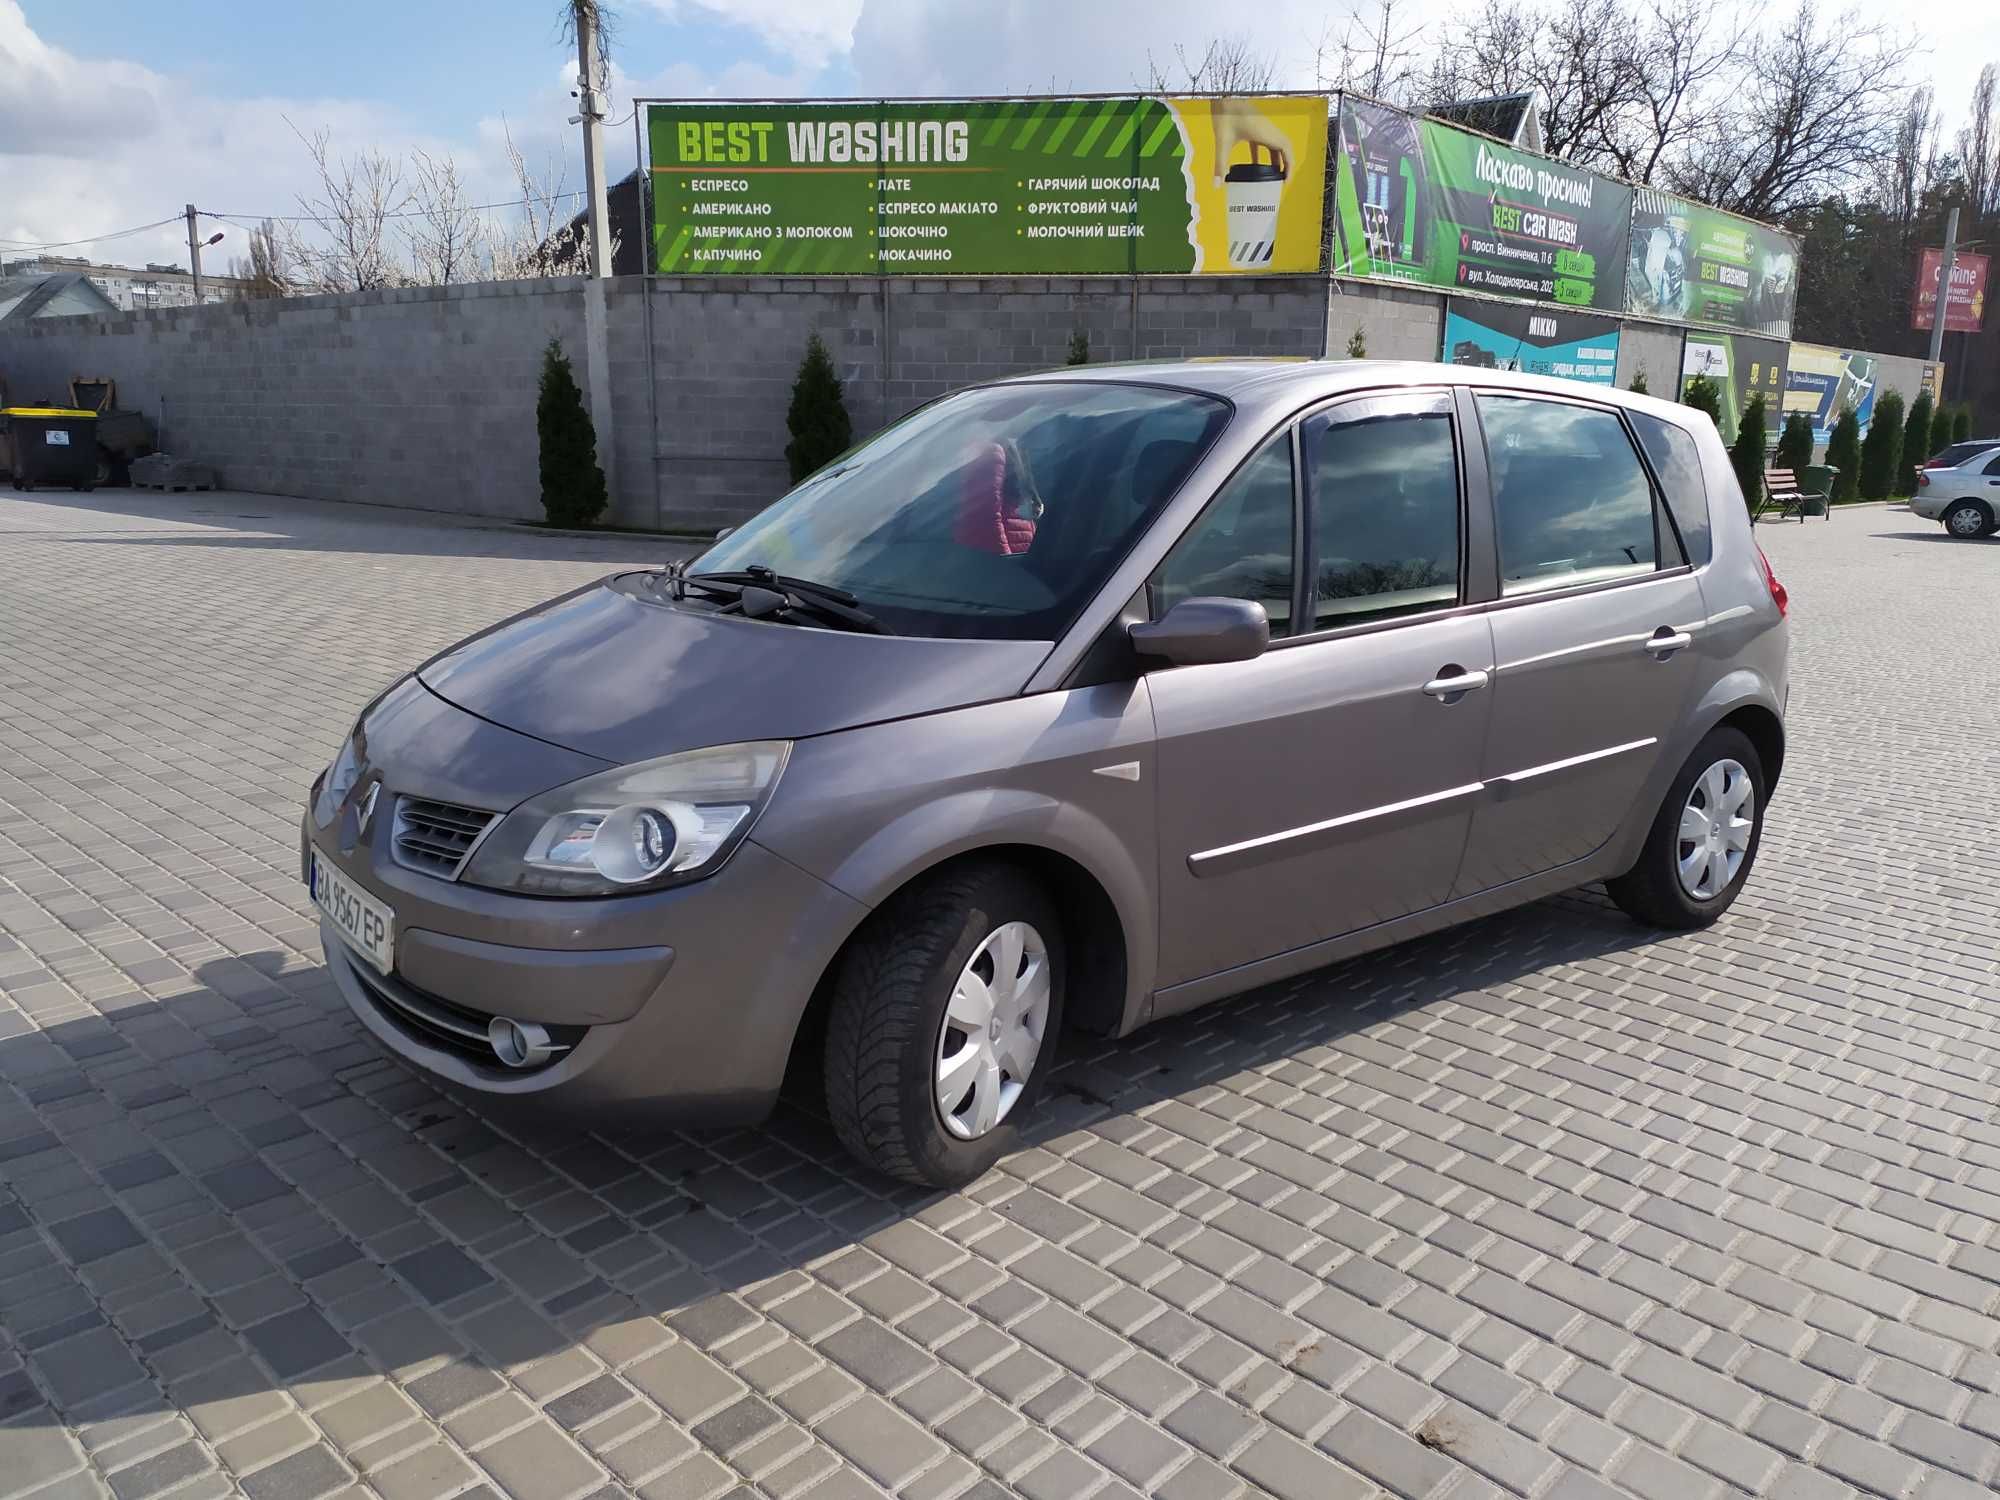 Продаємо свій сімейний авто – Renault Scenic II, 2009 р. в.